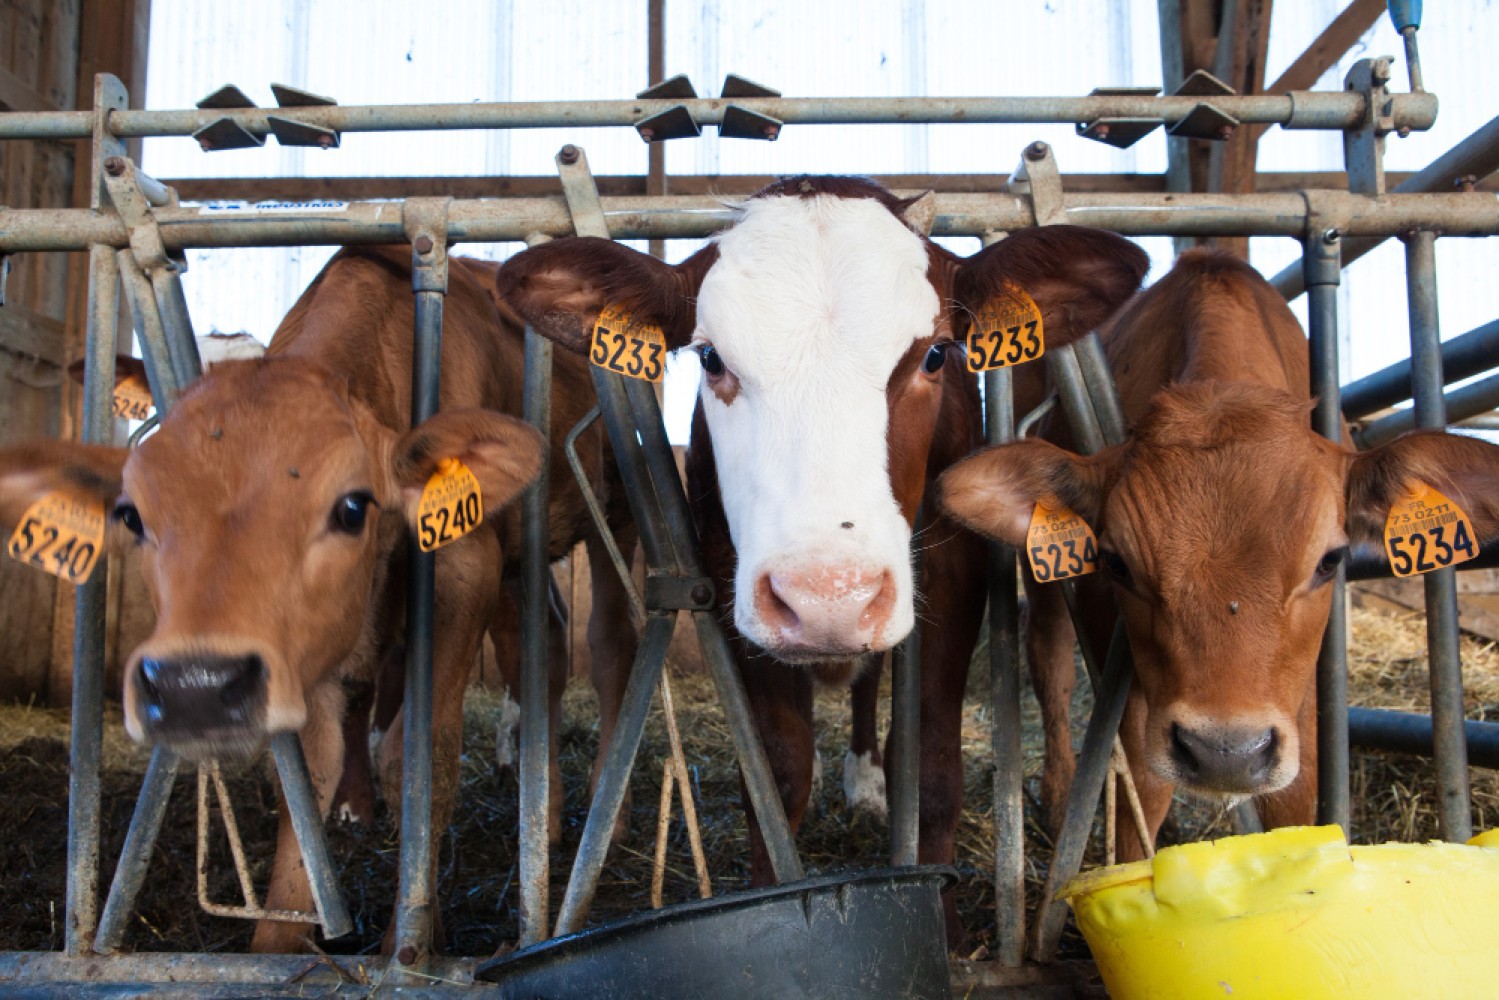 Эта статья обсуждает влияние различных факторов на молочную продуктивность коров, включая их питание, здоровье, генетику, условия содержания и уход. Понимание этих факторов поможет производителям молока оптимизировать условия для своего стада и увеличить производительность.